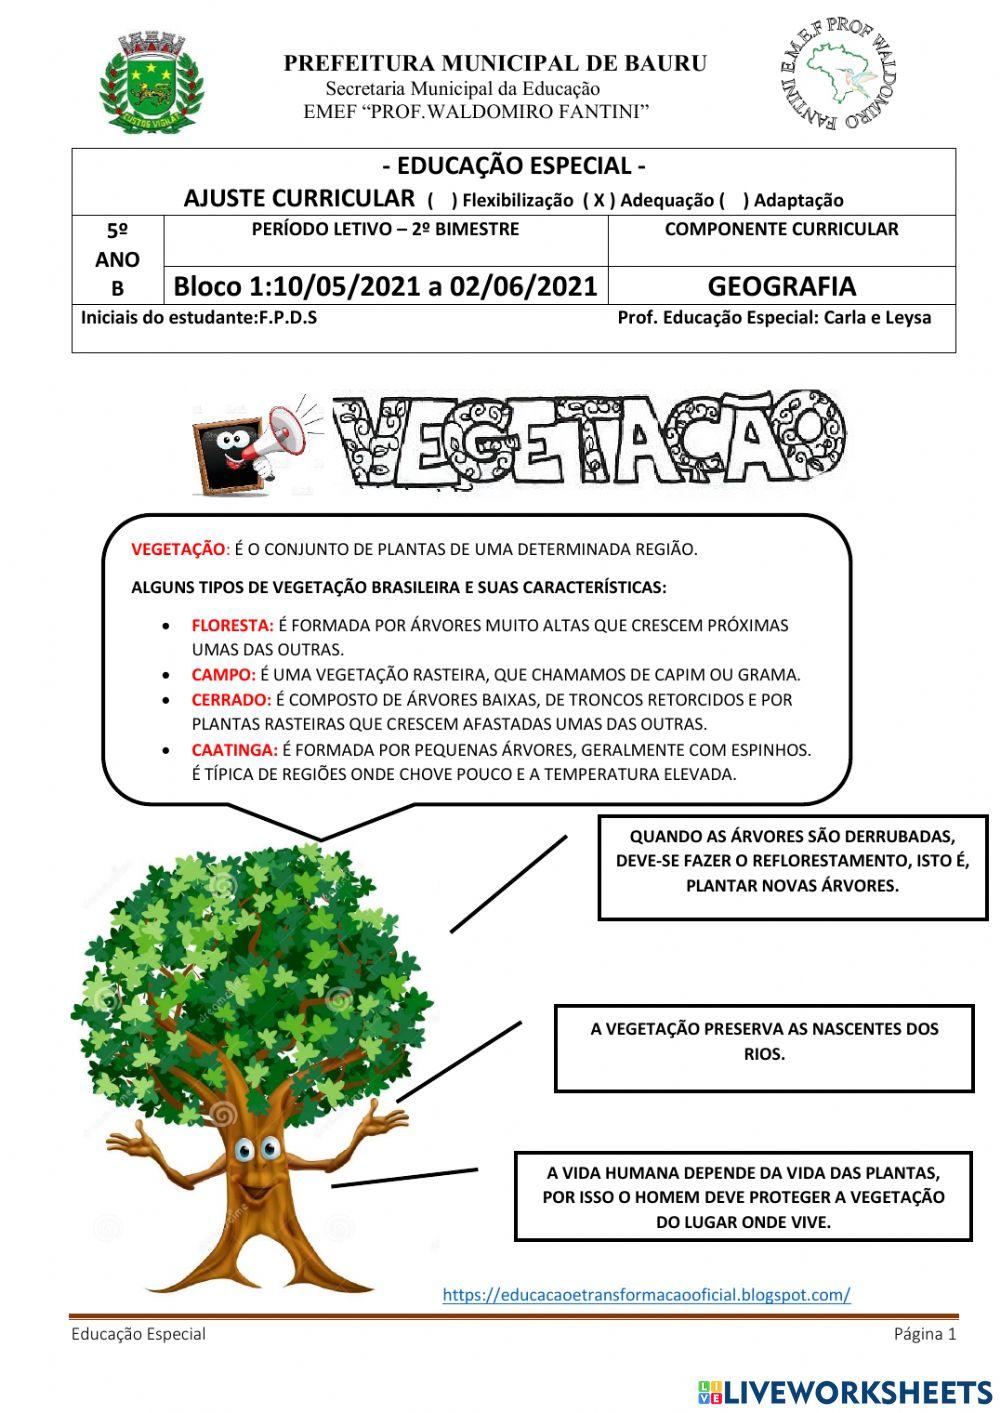 Vegetação e alguns tipos de vegetação brasileira.